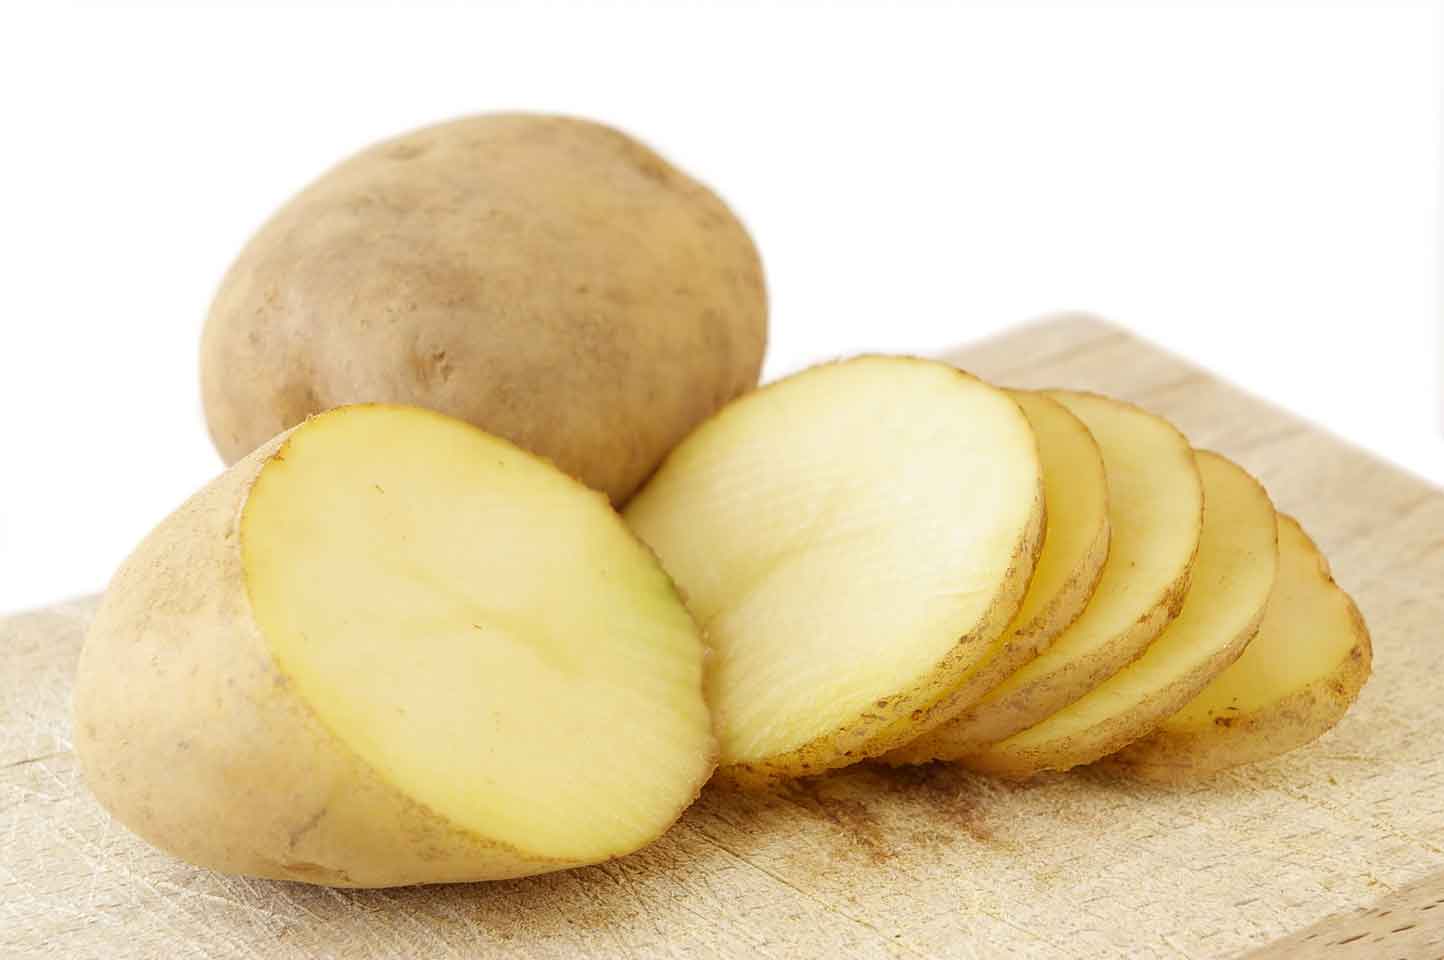 Da trắng nõn nà thu hút phái mạnh chỉ nhờ khoai tây - Làm đẹp - Việt Giải Trí